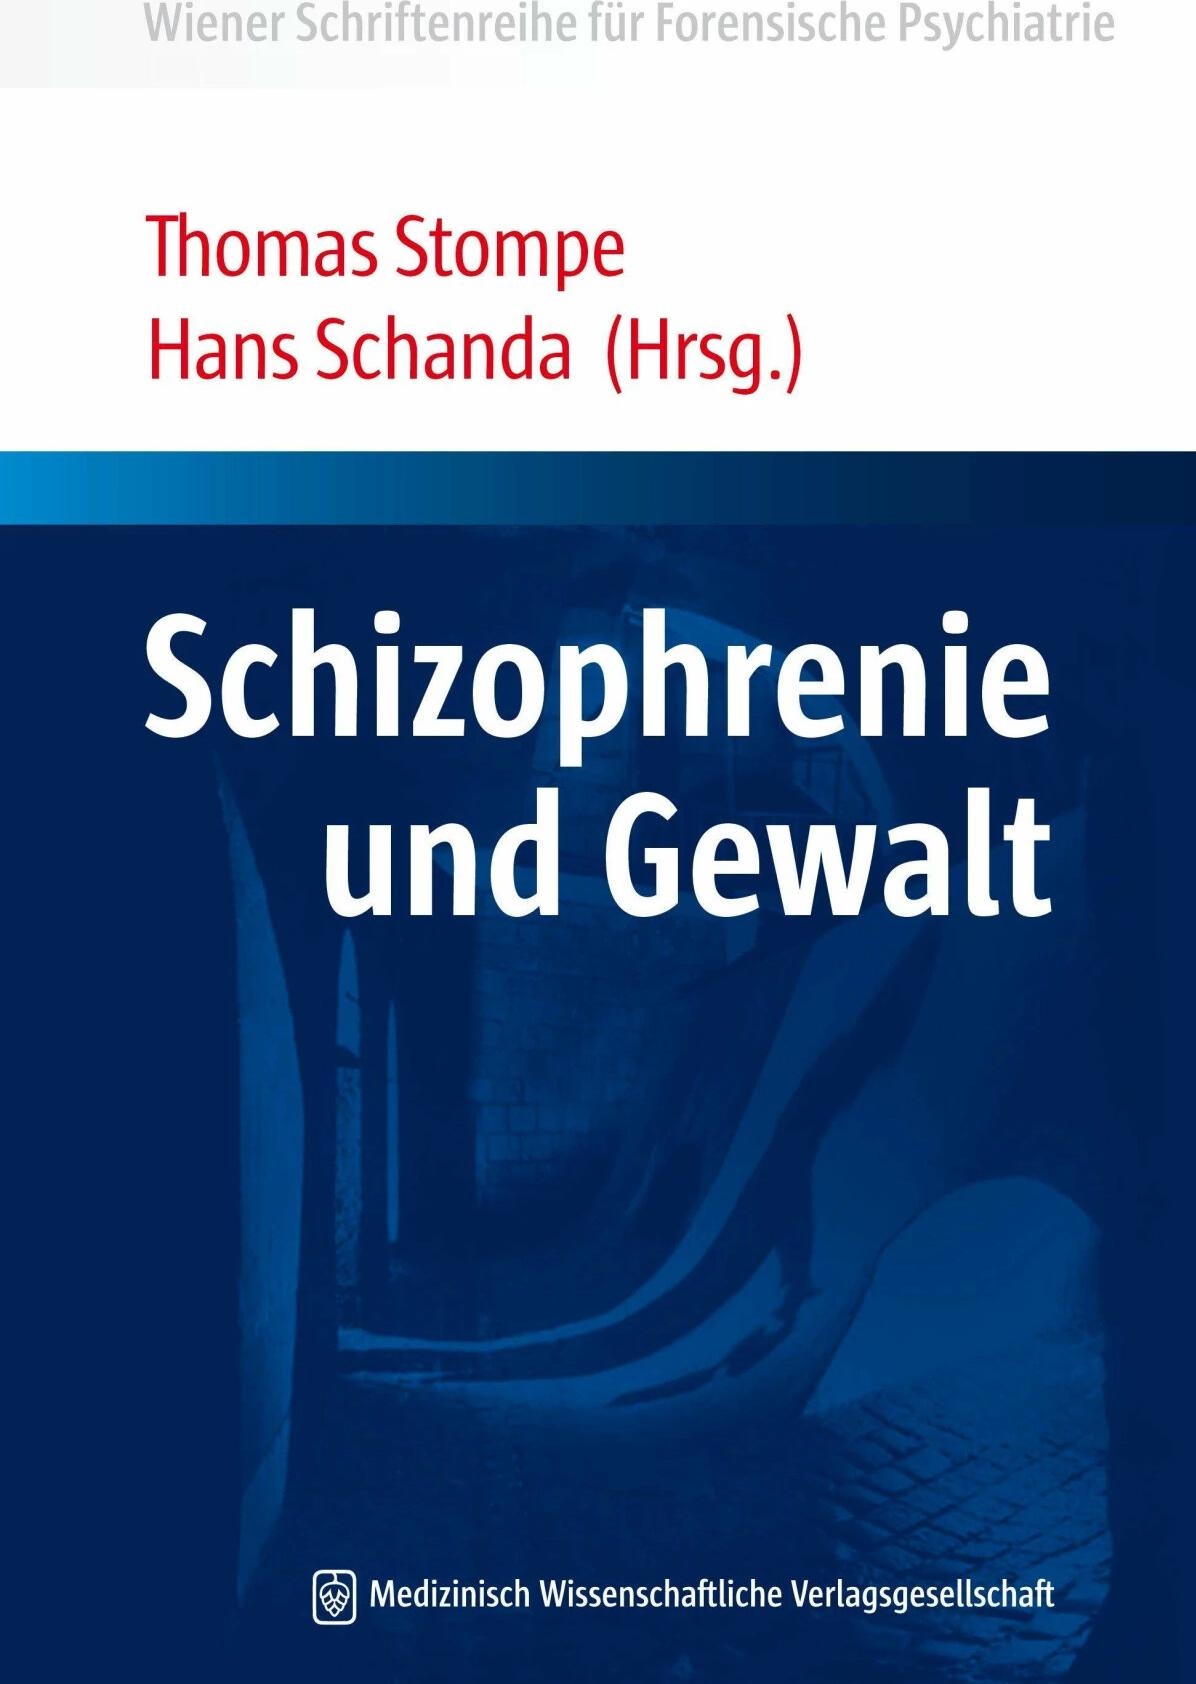 Schizophrenie und Gewalt, Fachbücher von Hans Schanda, Thomas Stompe